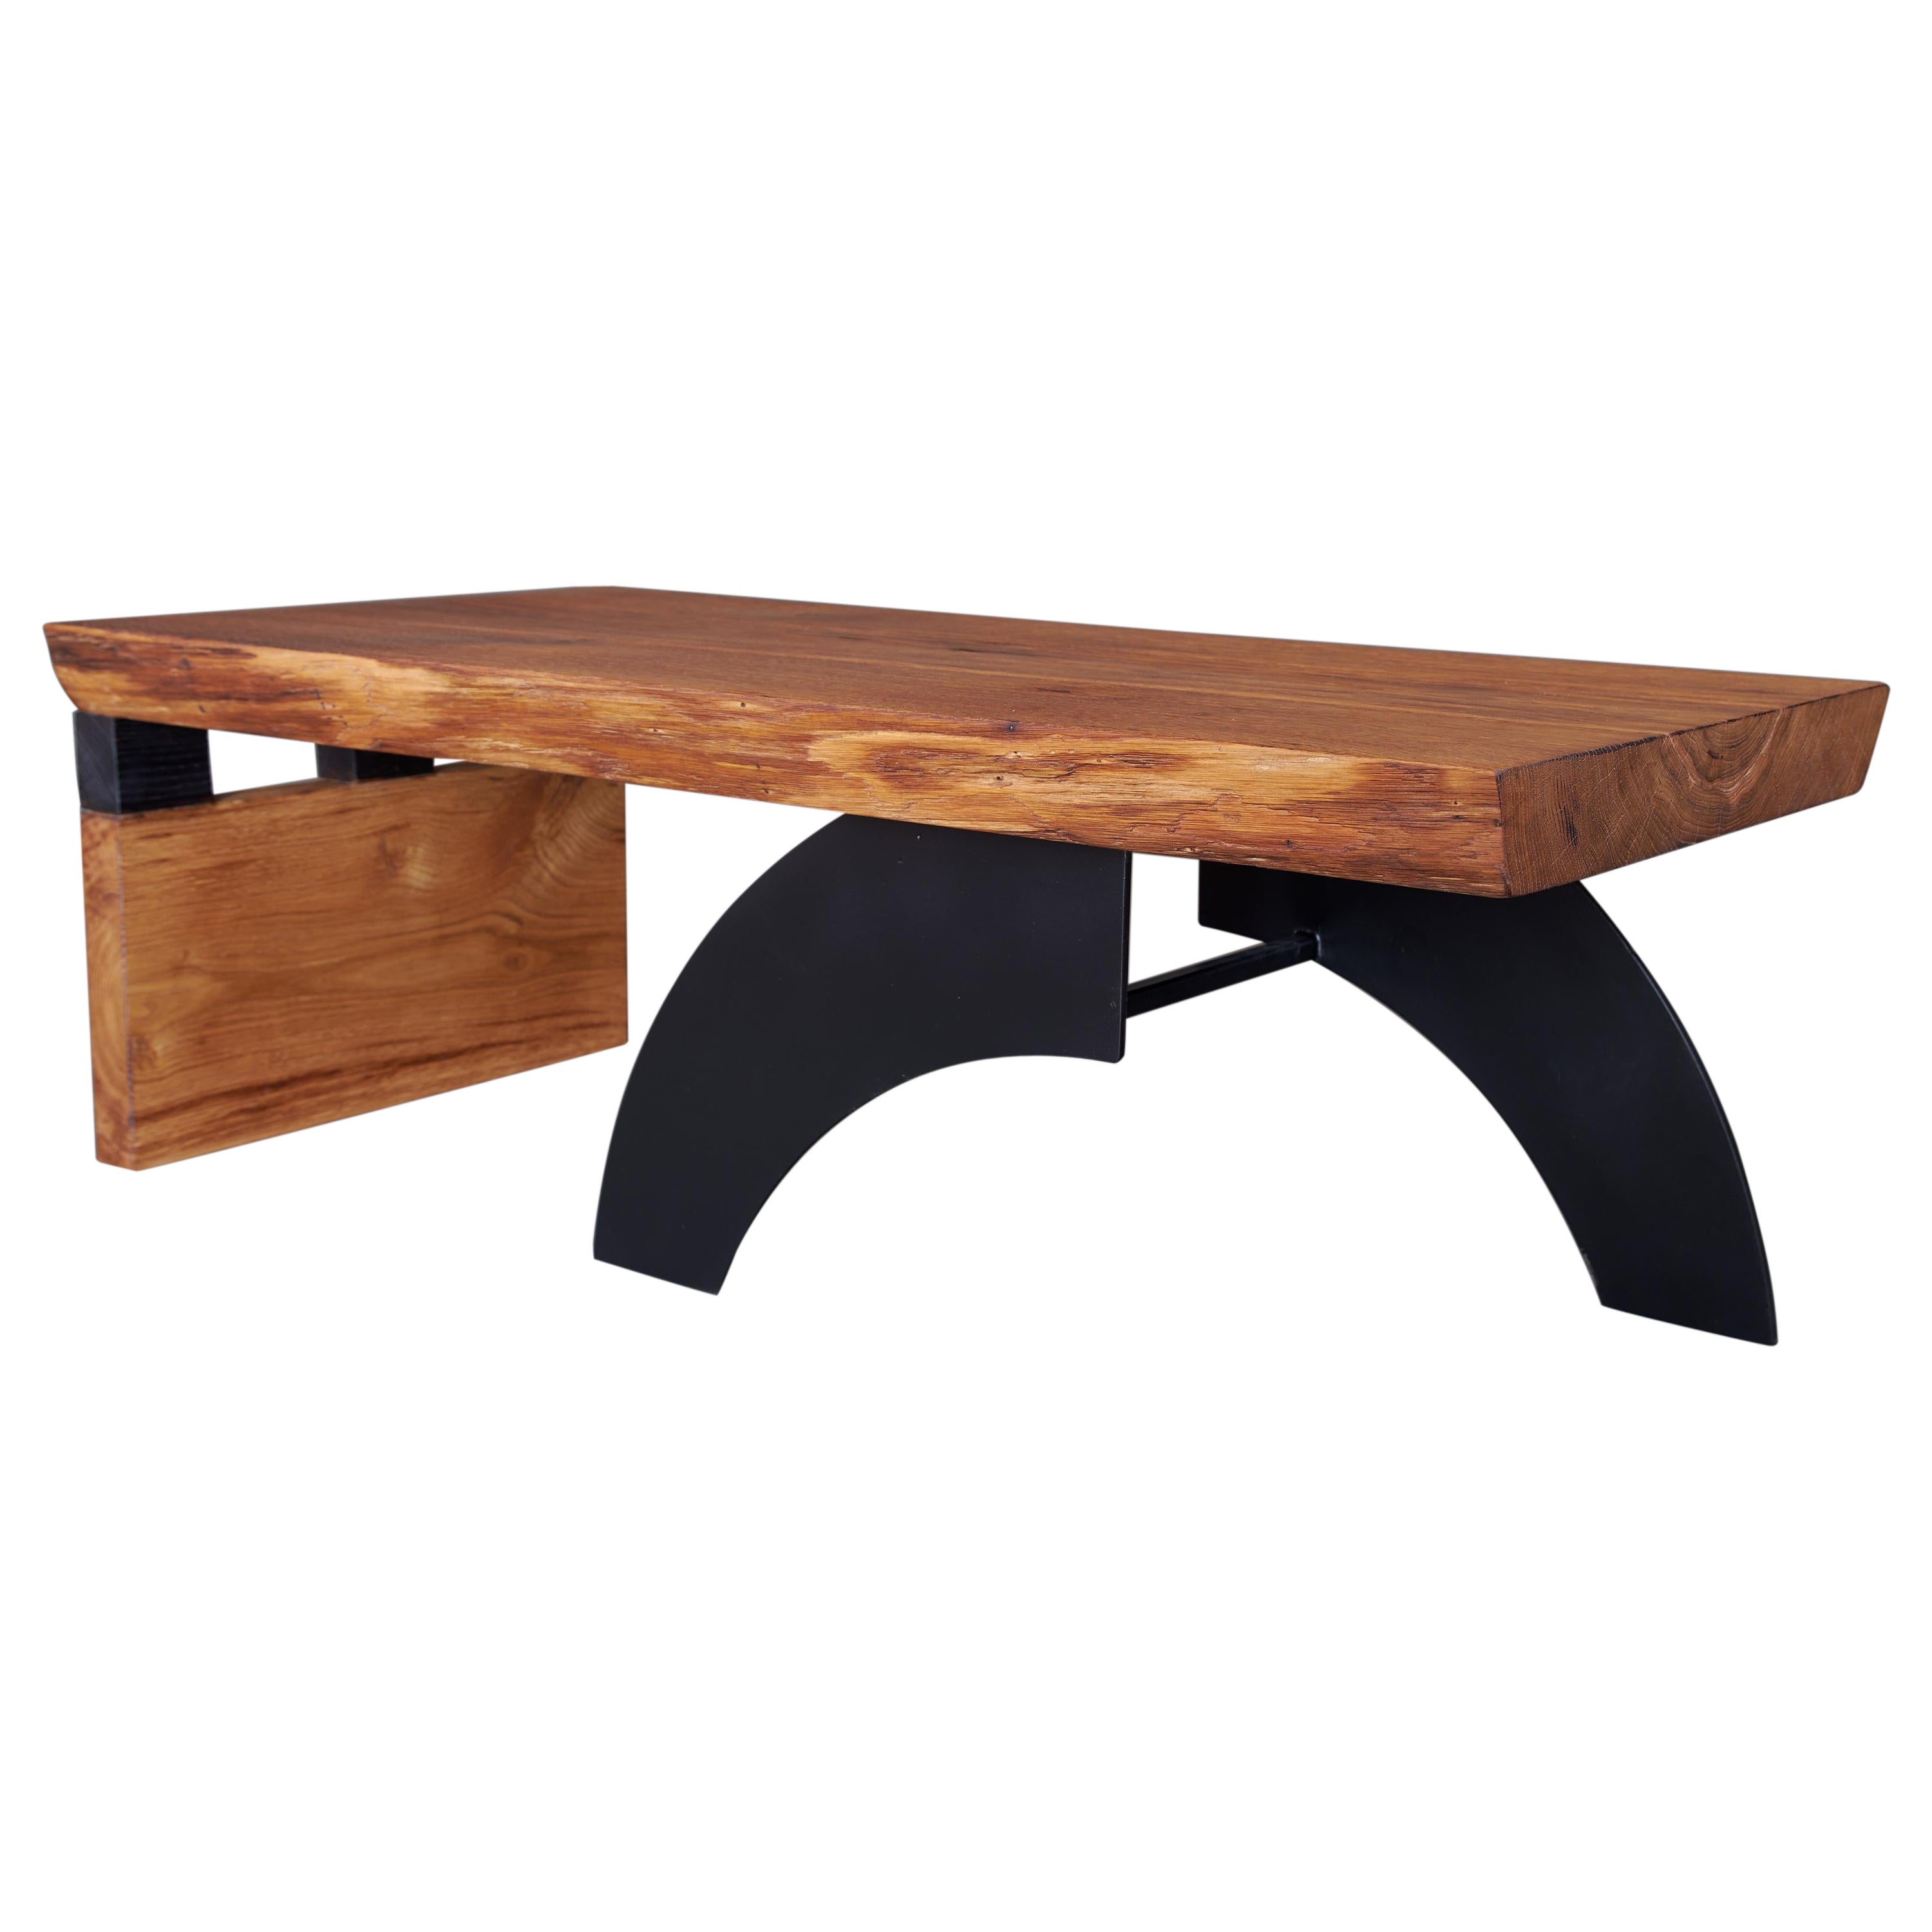 Massive oak Coffee Table, Contemporary Original Design, Logniture For Sale